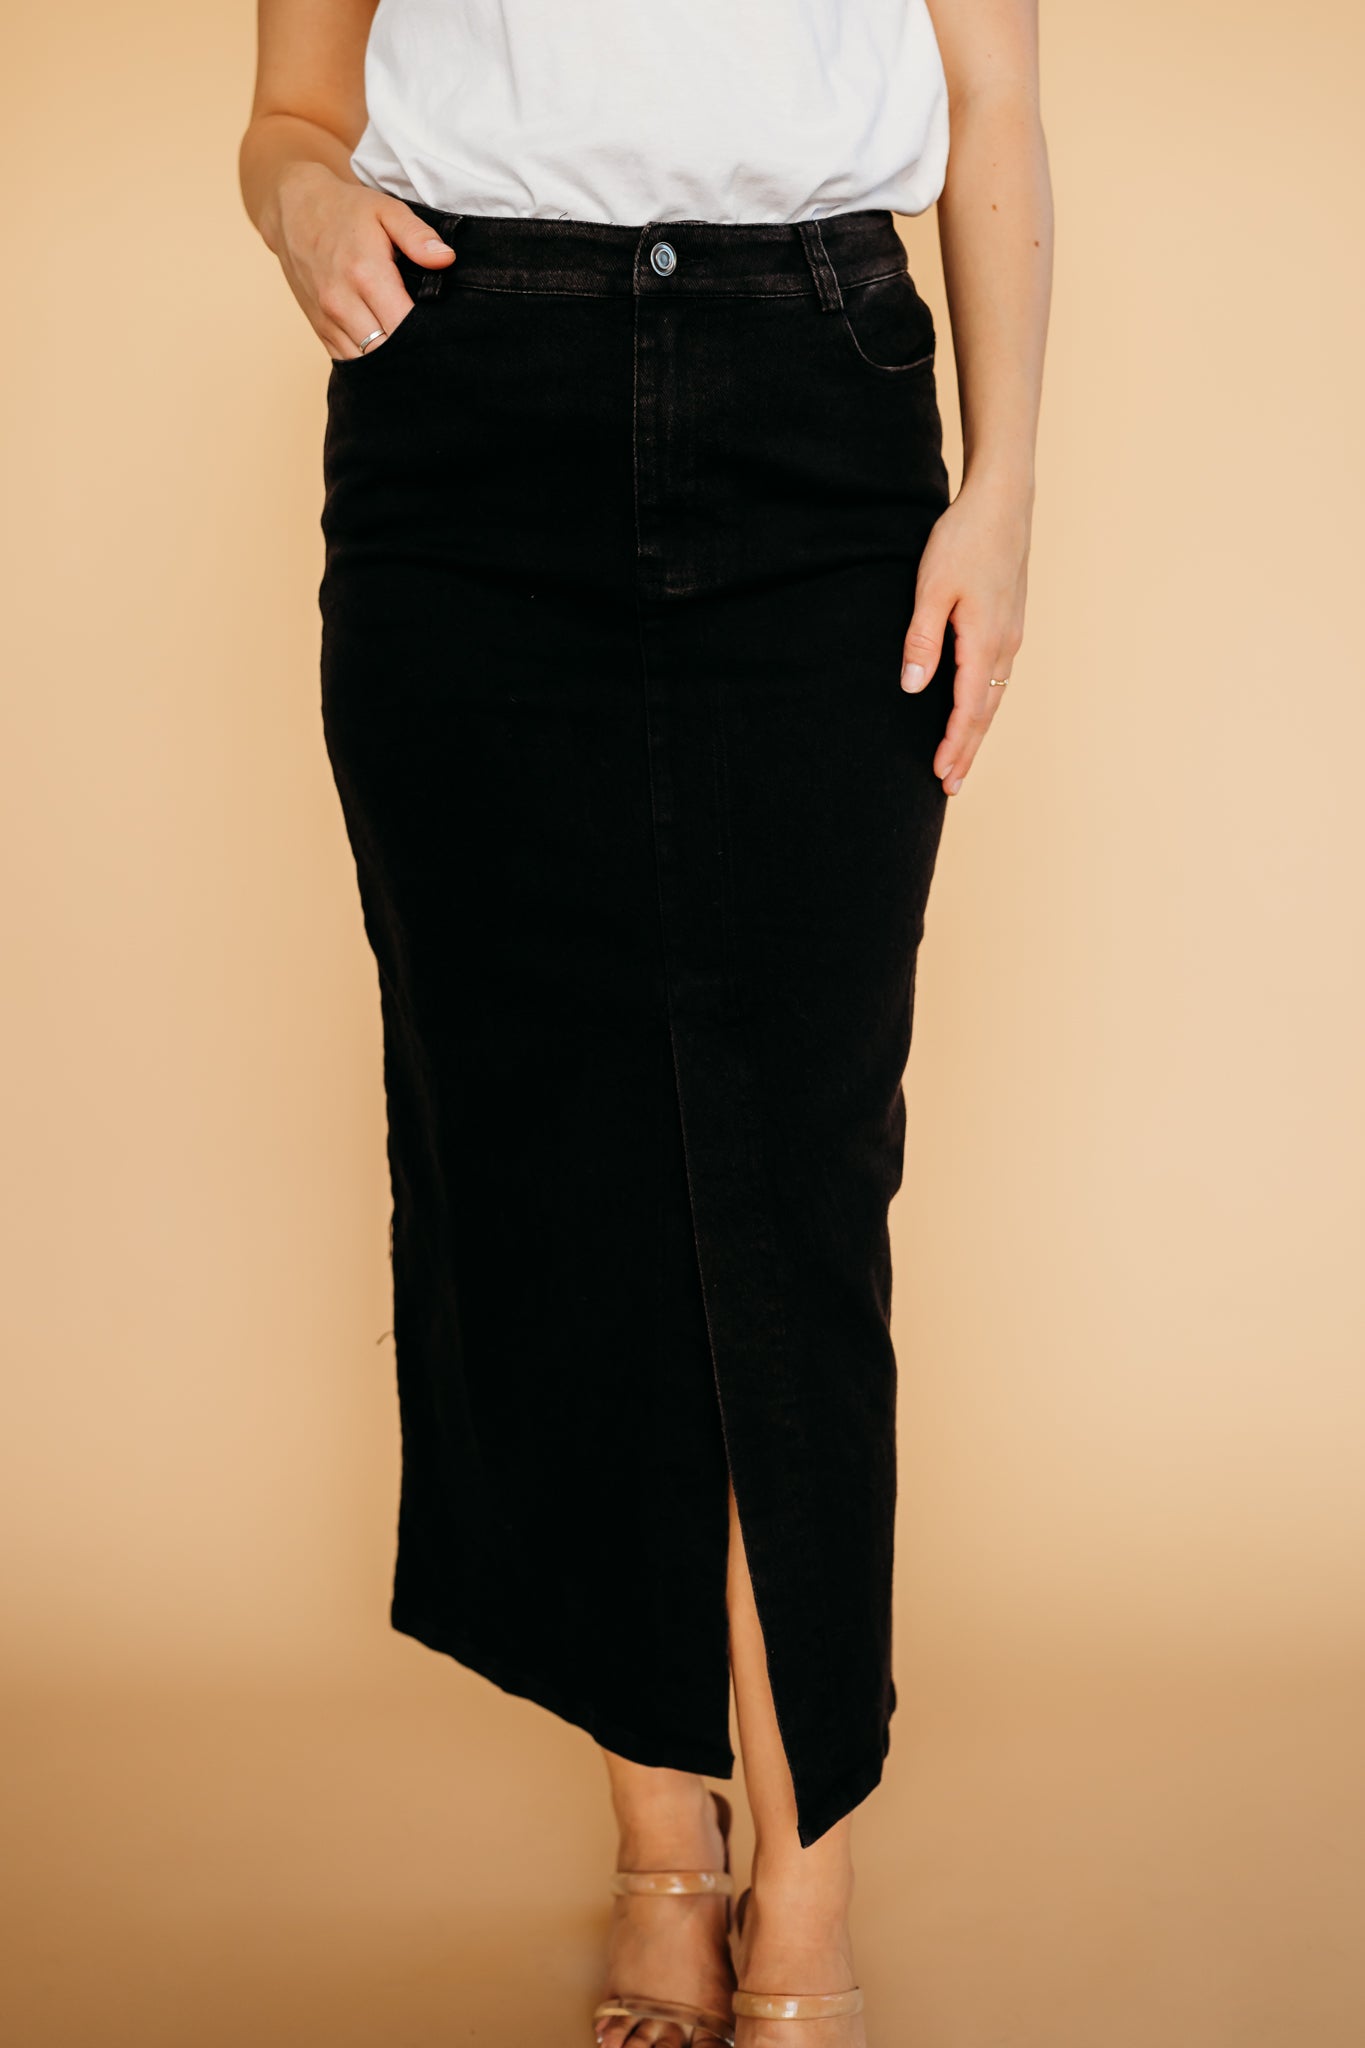 Modest black denim skirt | PINK DESERT